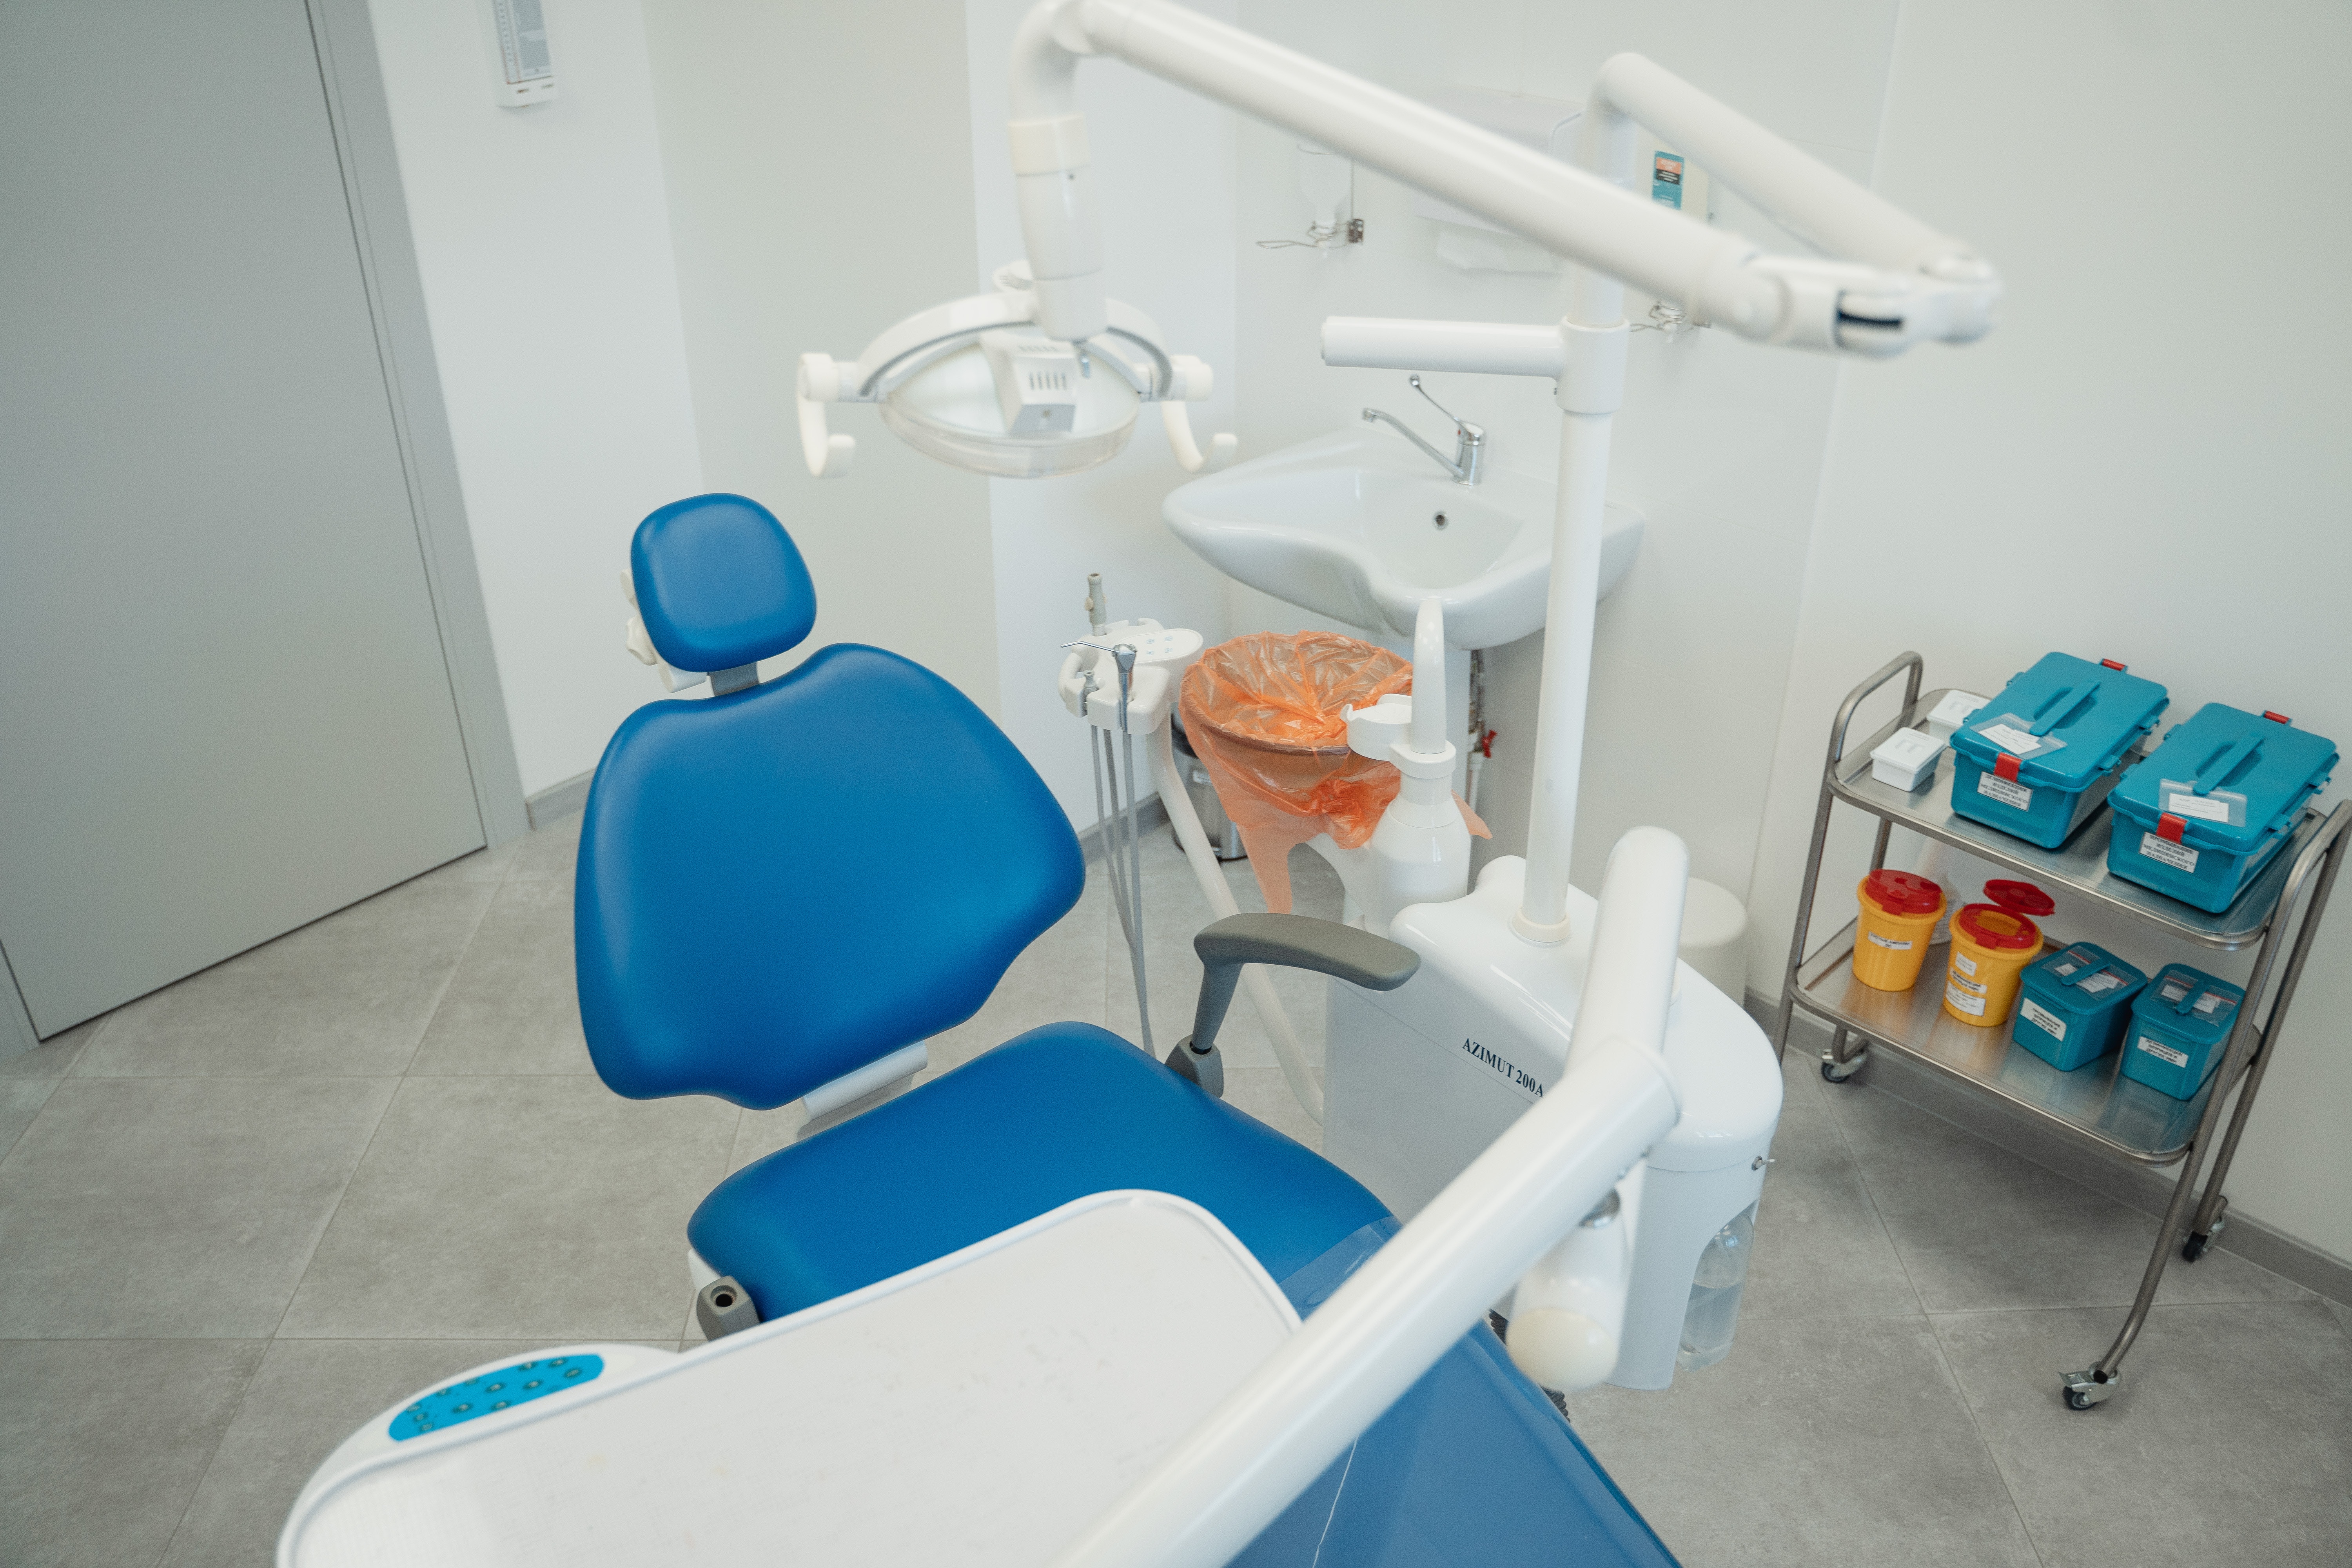 Dentist chair 2.jpg